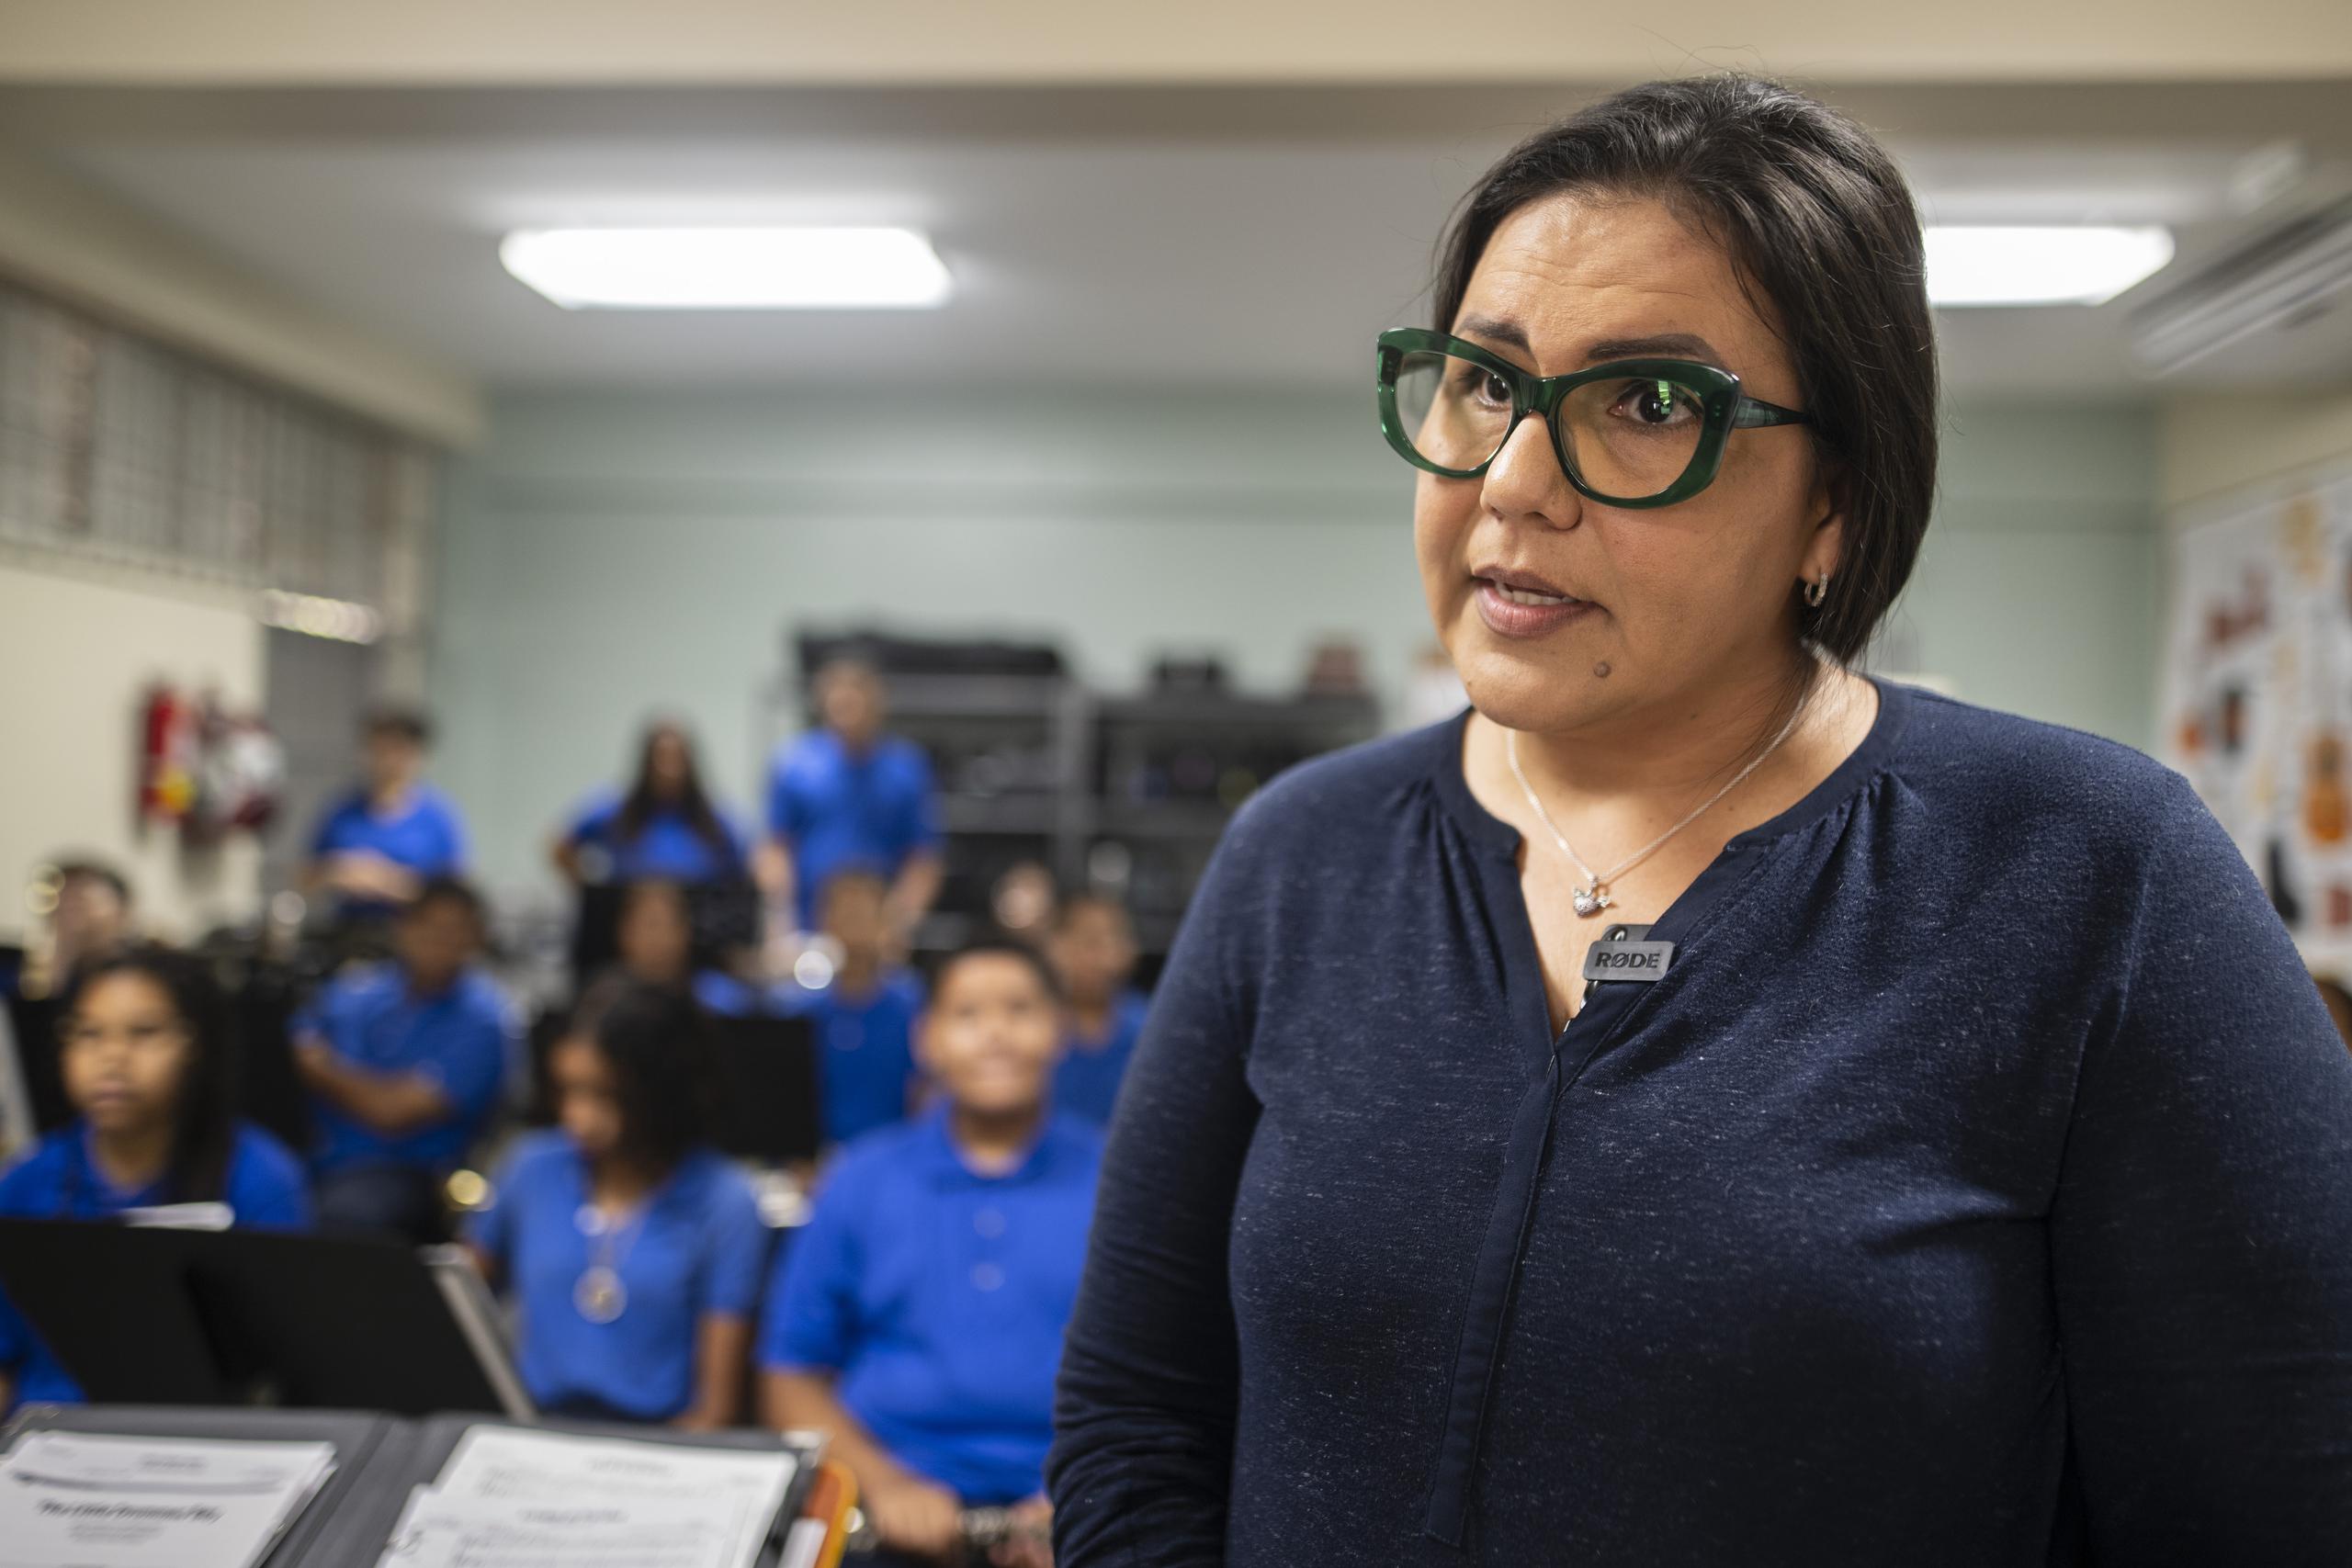 La directora Brendalissa Rodríguez Dieppa recalcó en la importancia de incluir programas de bellas artes y educación física en las escuelas.